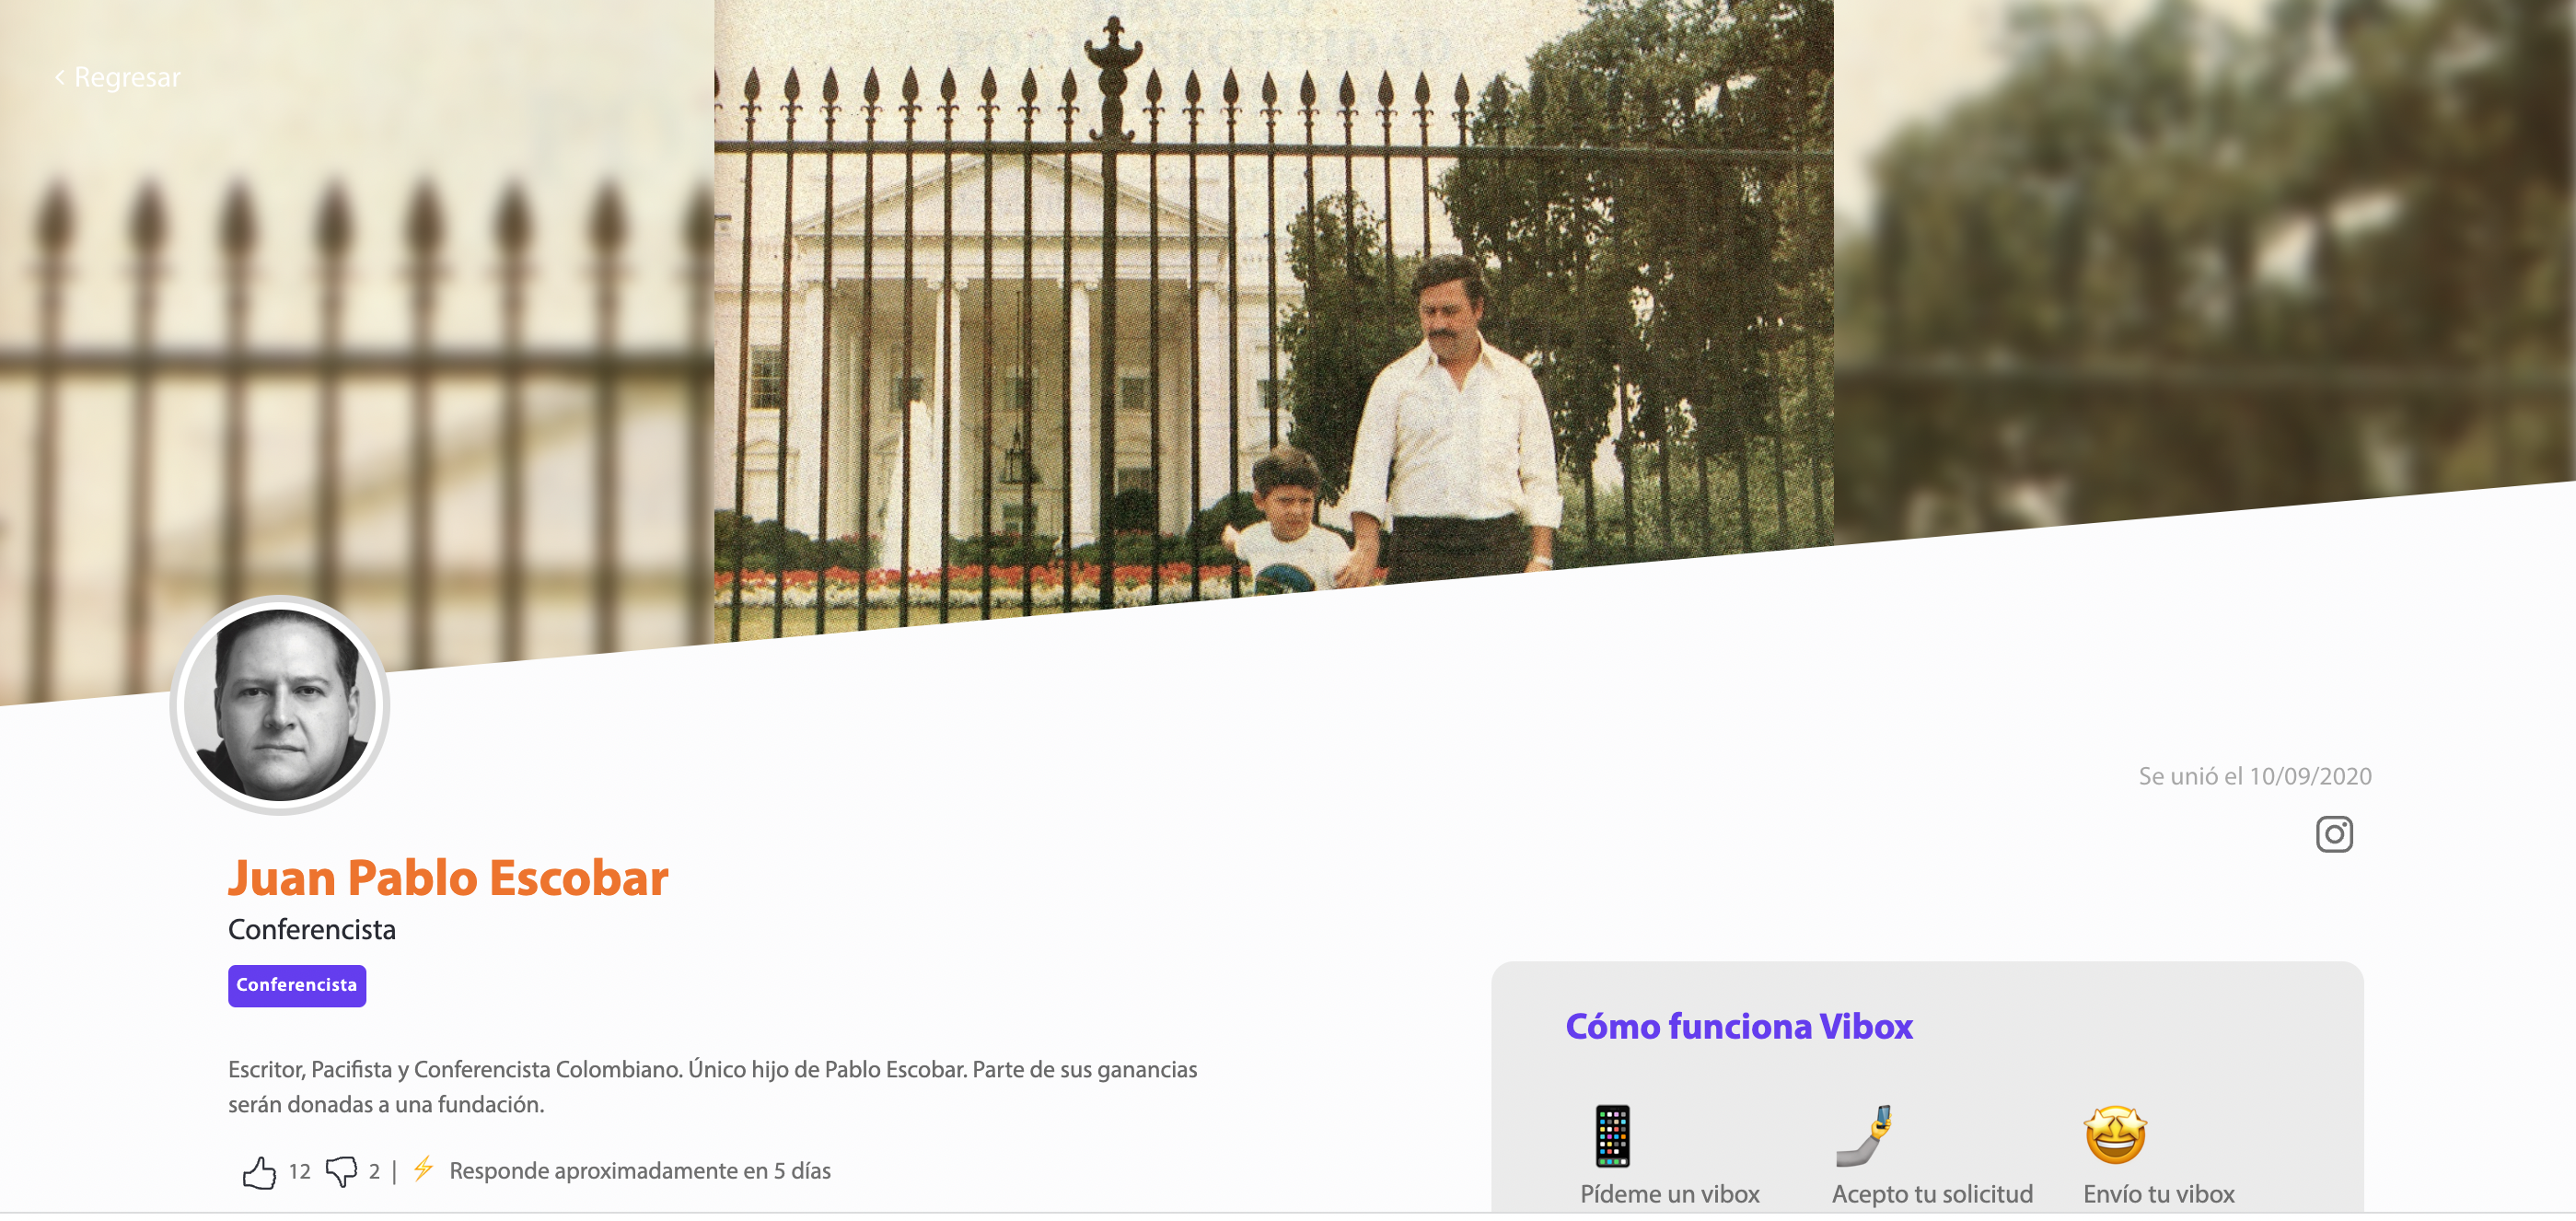 El perfil de Vibox de Juan Pablo Escobar.